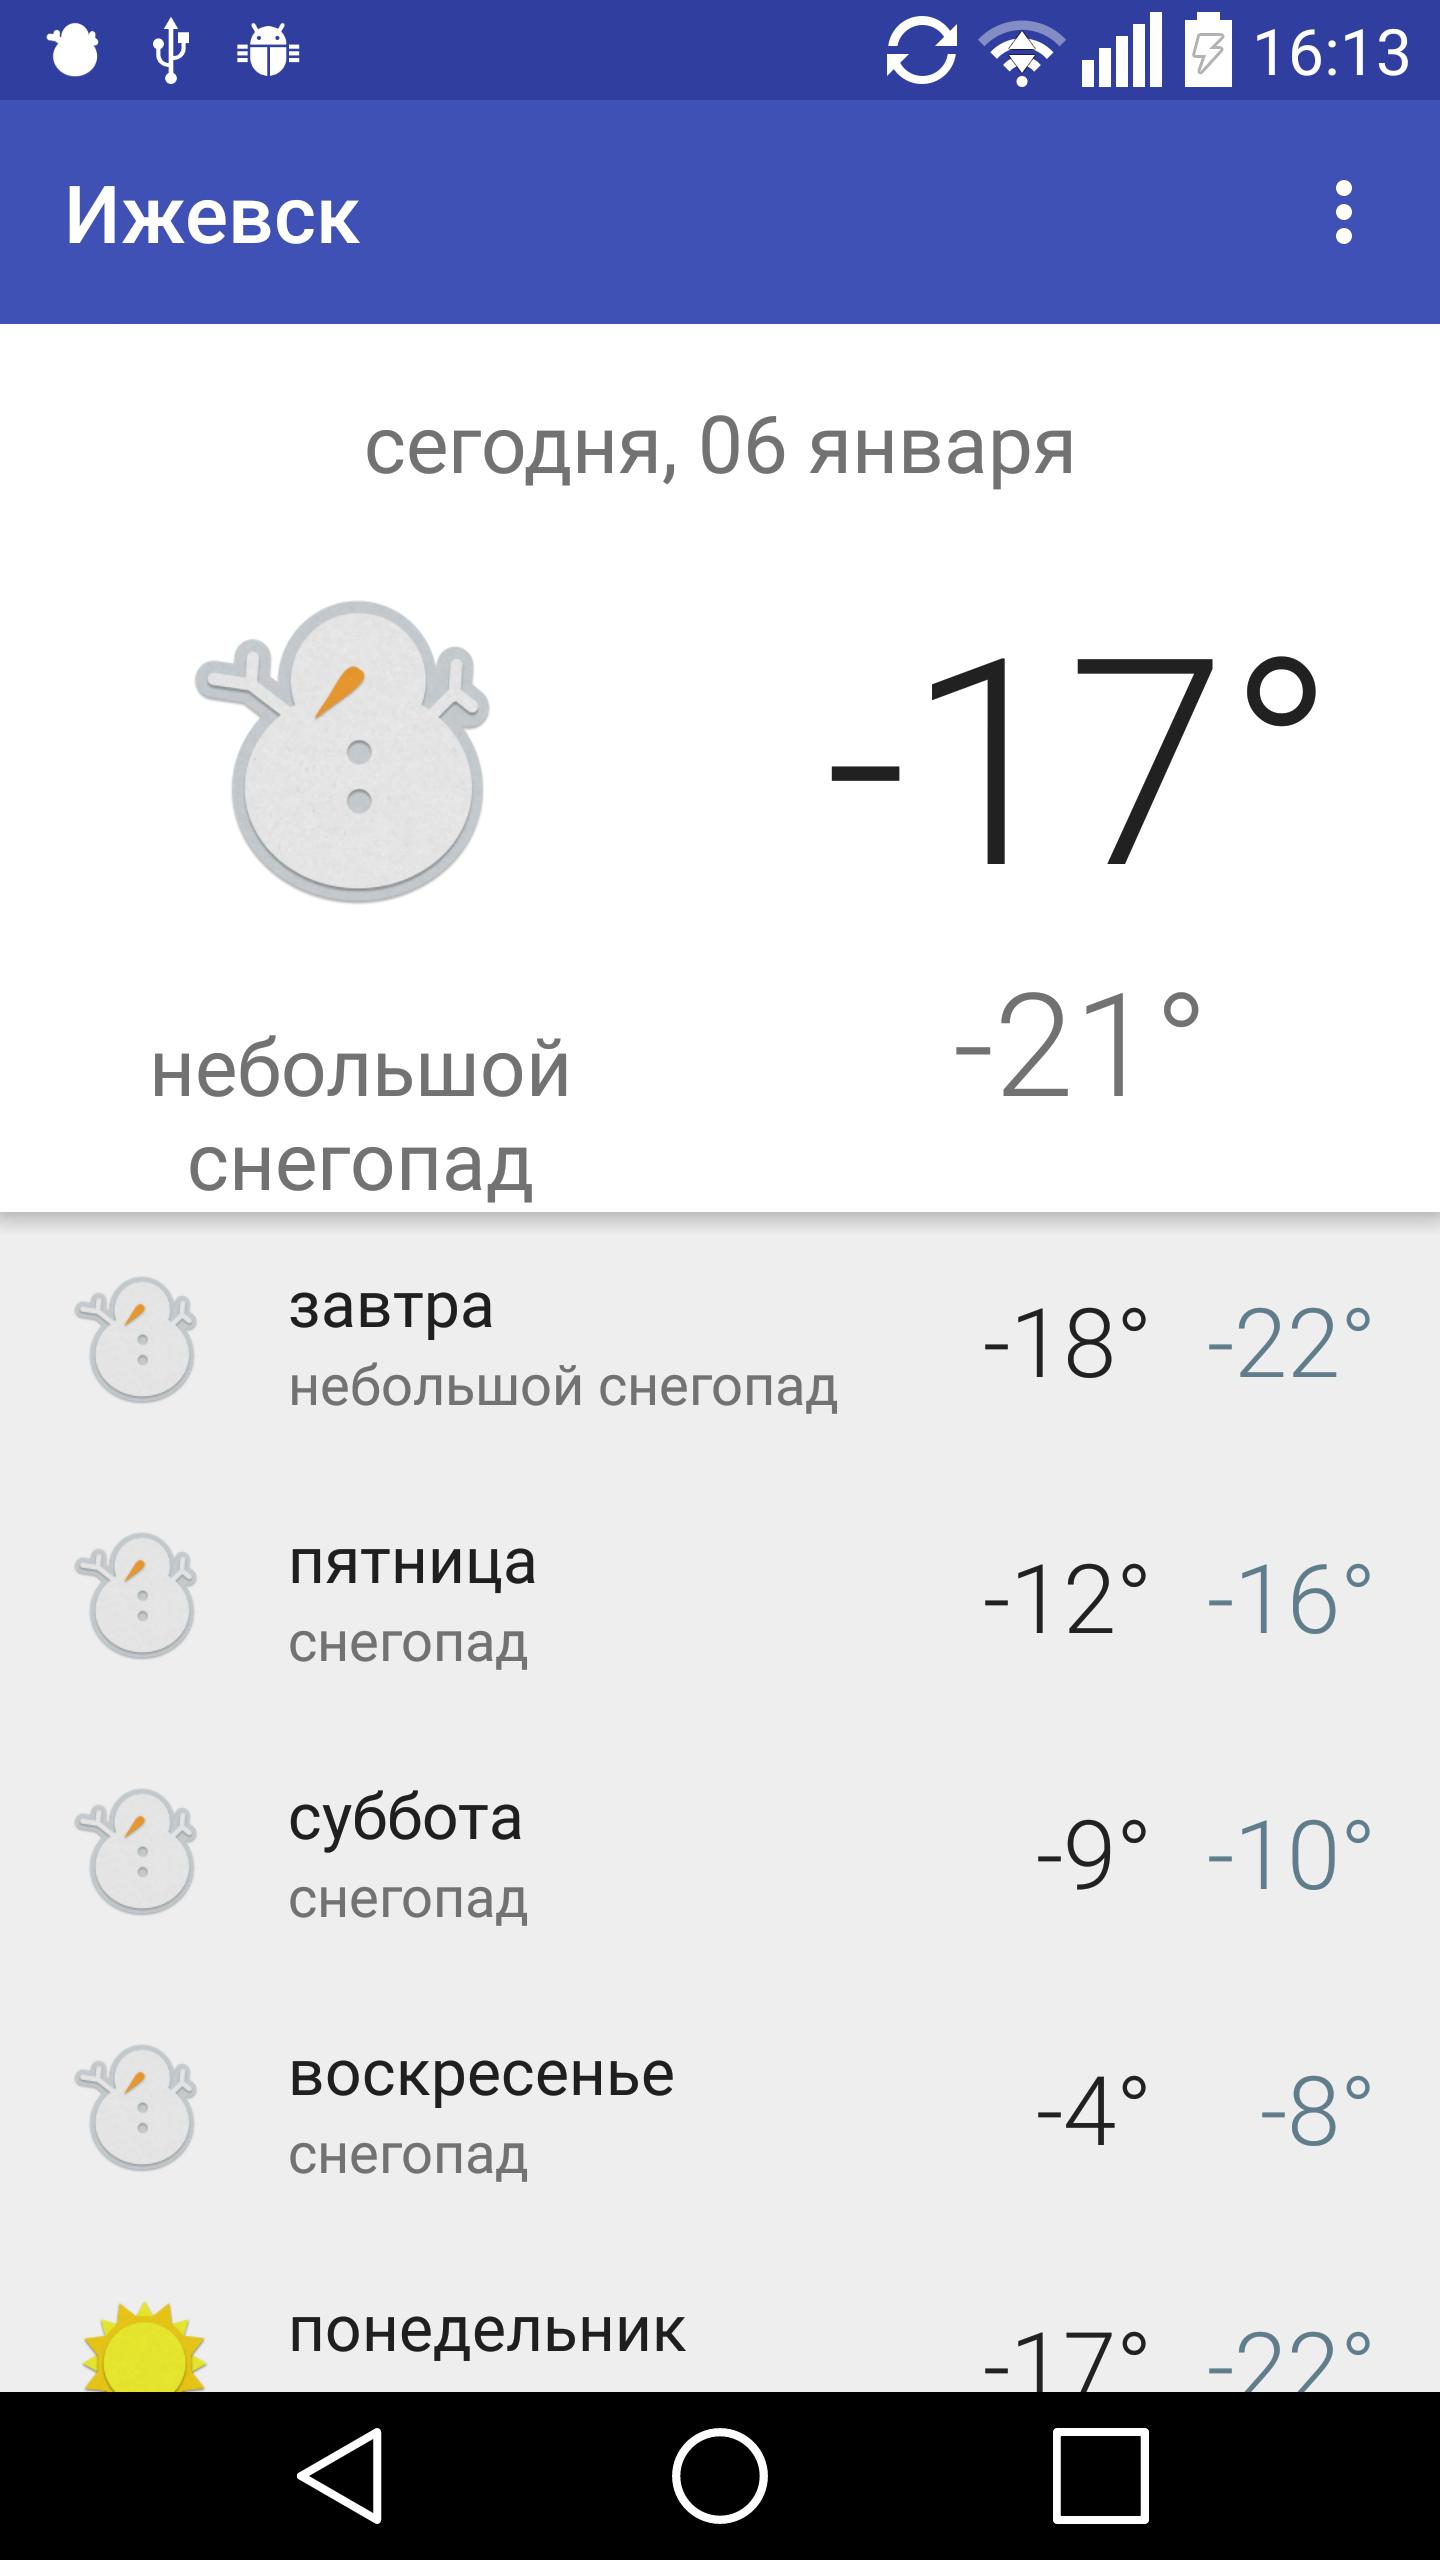 Какая завтра погода в стихах. Погода в Ярославле. Погода в Ижевске. Погода в Ярославле сегодня. Погода в Ижевске на неделю.